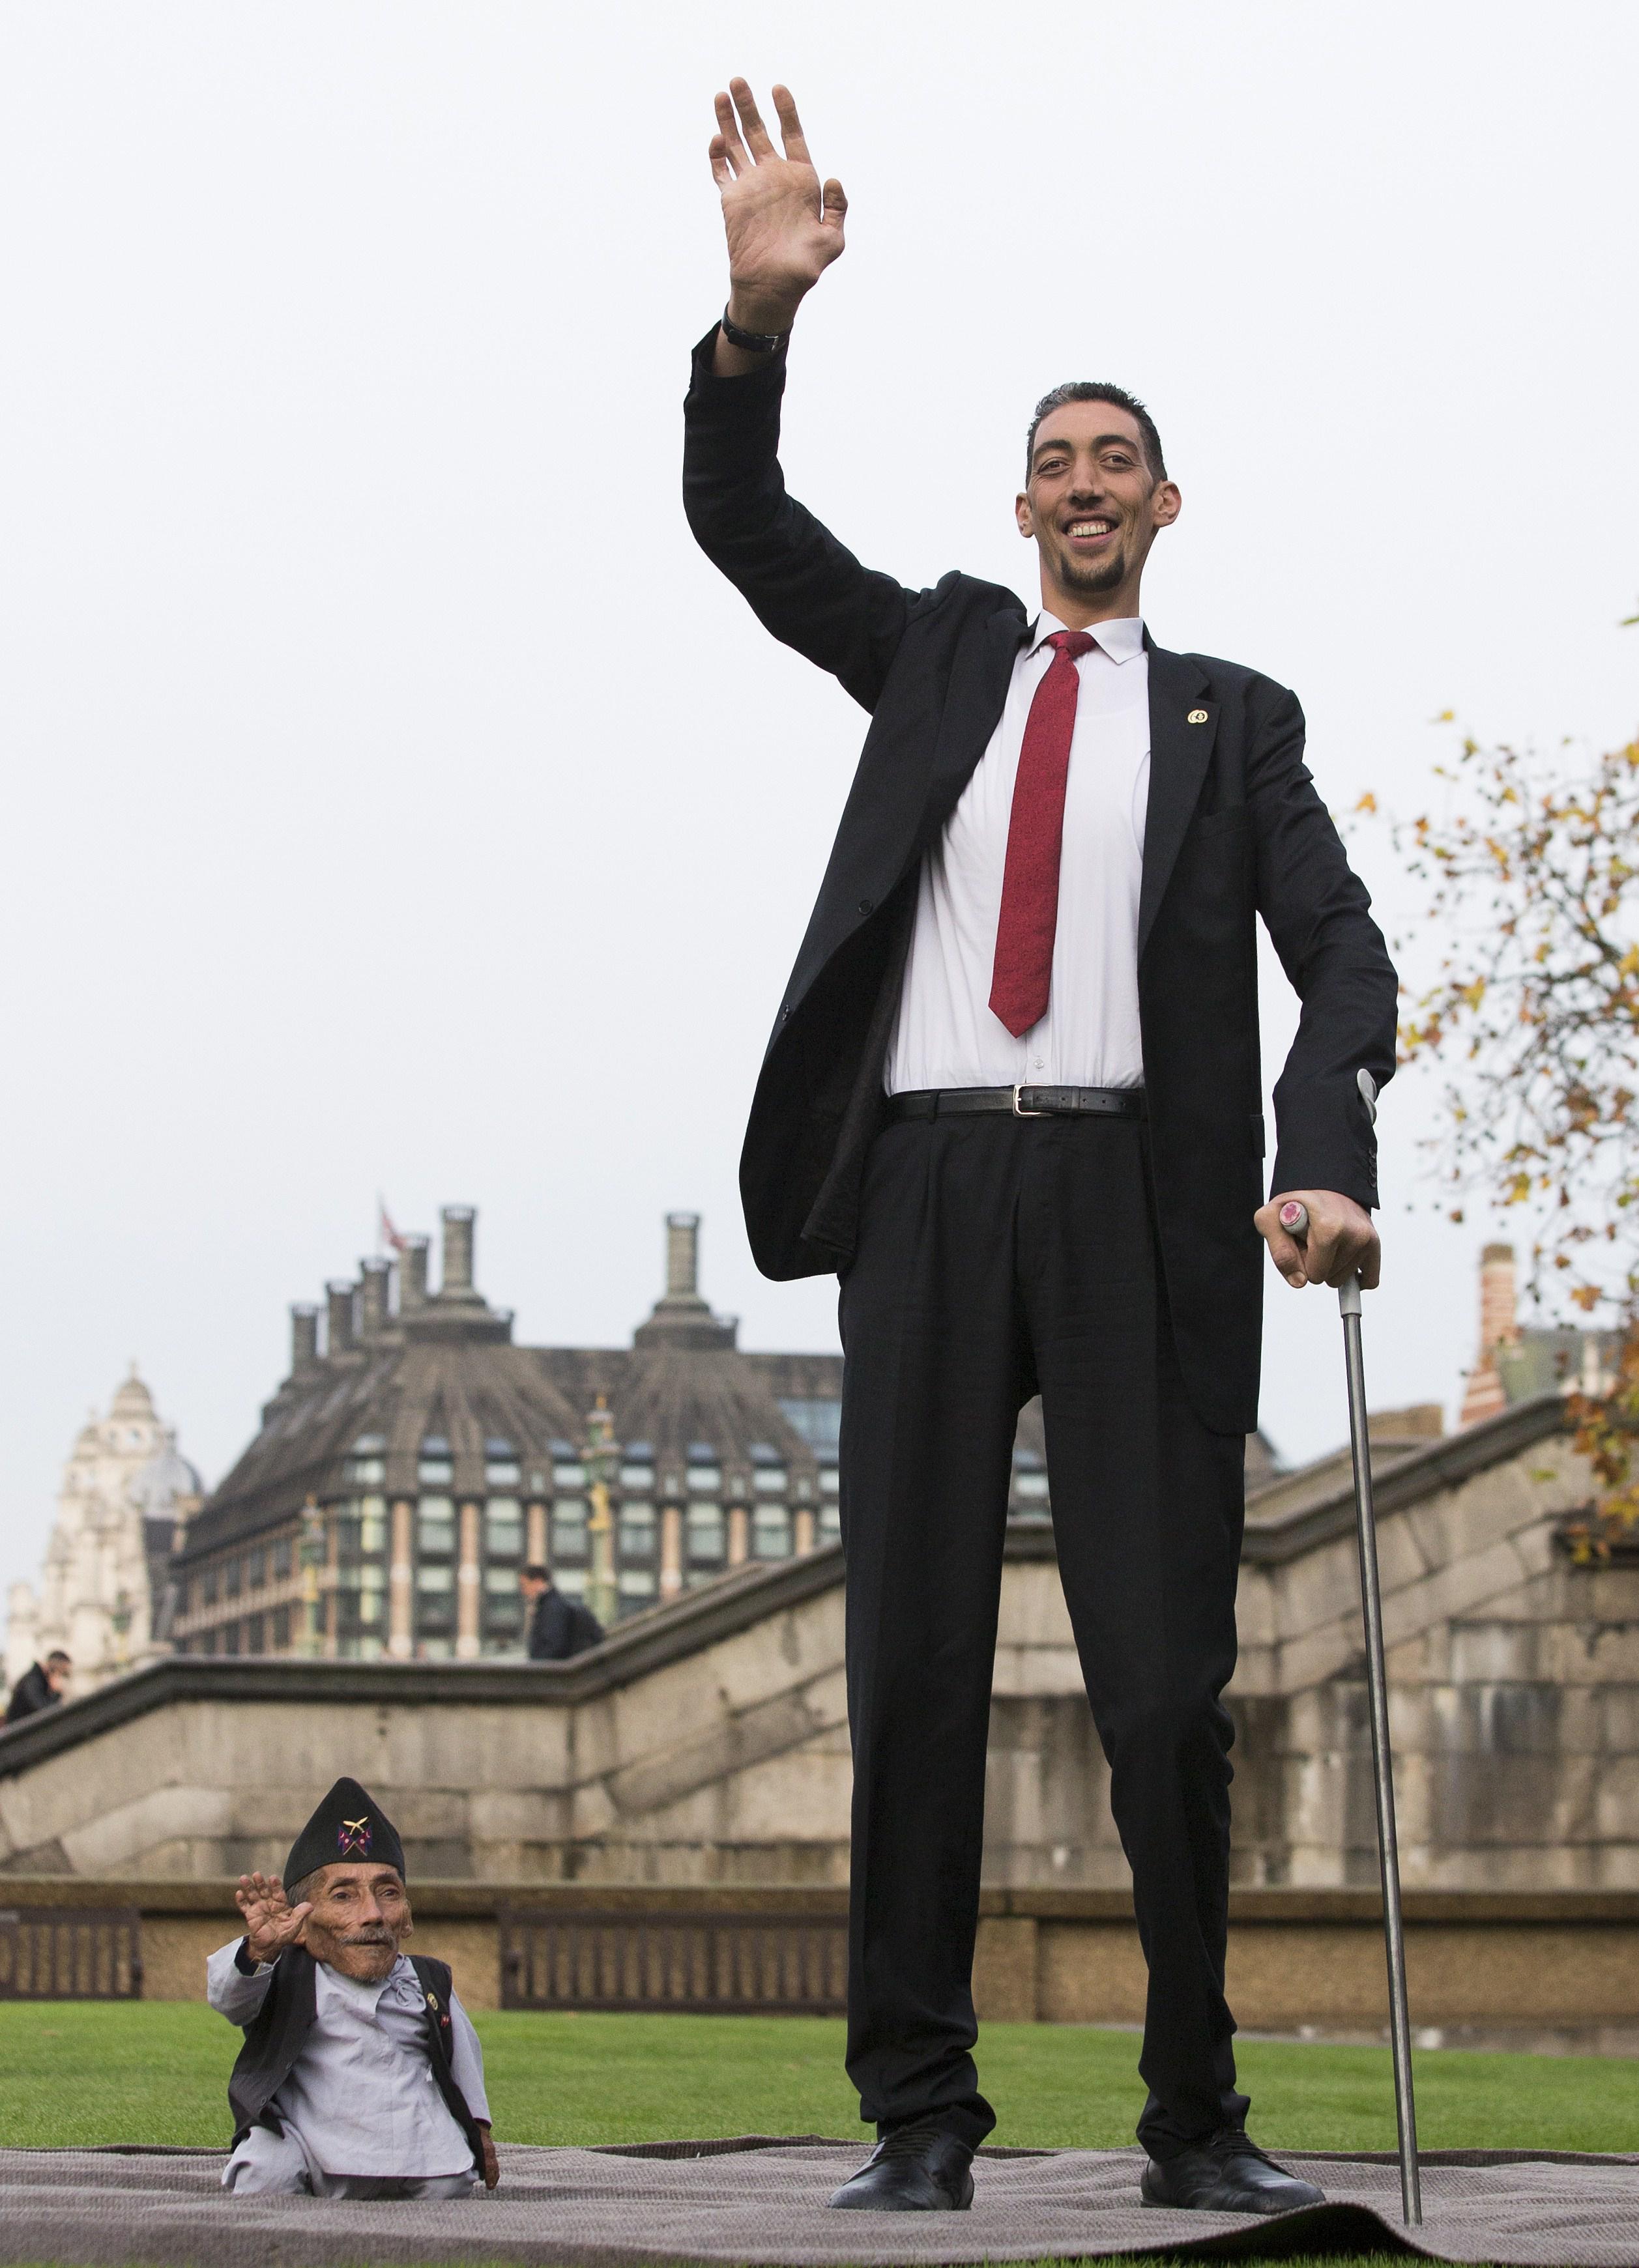 Самый длинный человек в мире за всю историю фото